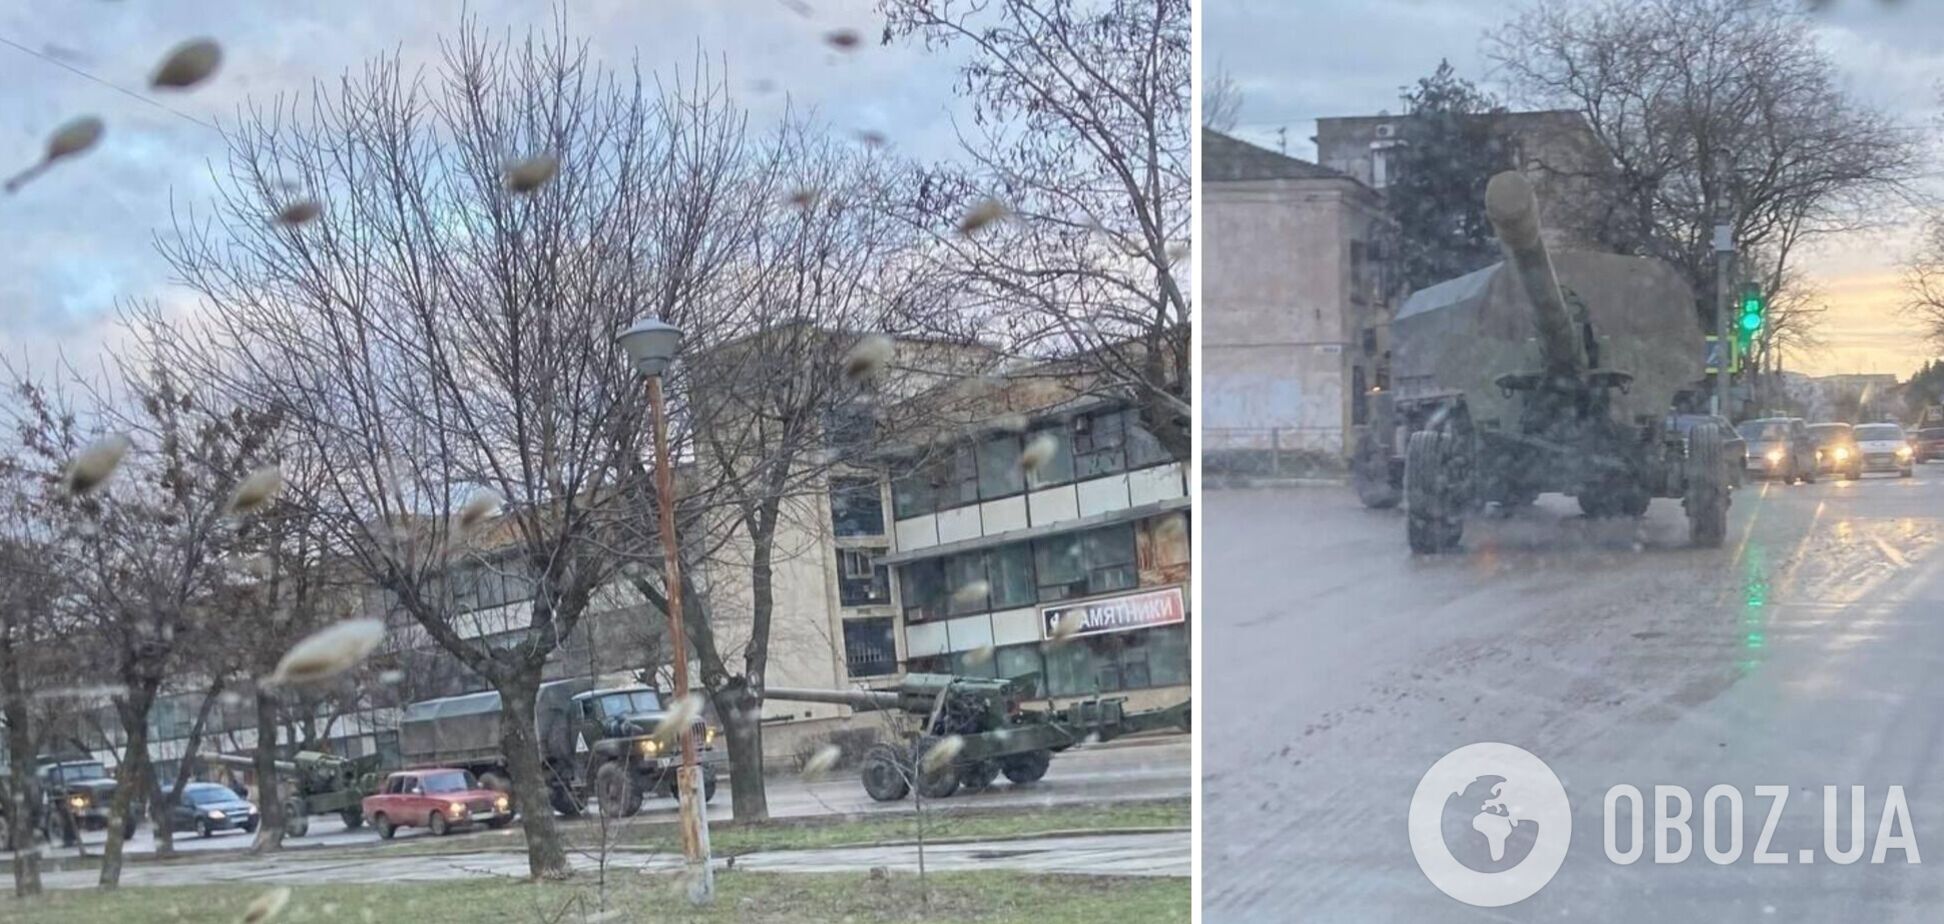 'Бавовні' бути? Агенти 'Атеш' розвідали маршрут перекидання гармат 'Гіацинт-Б' в окупованому Криму. Фото
